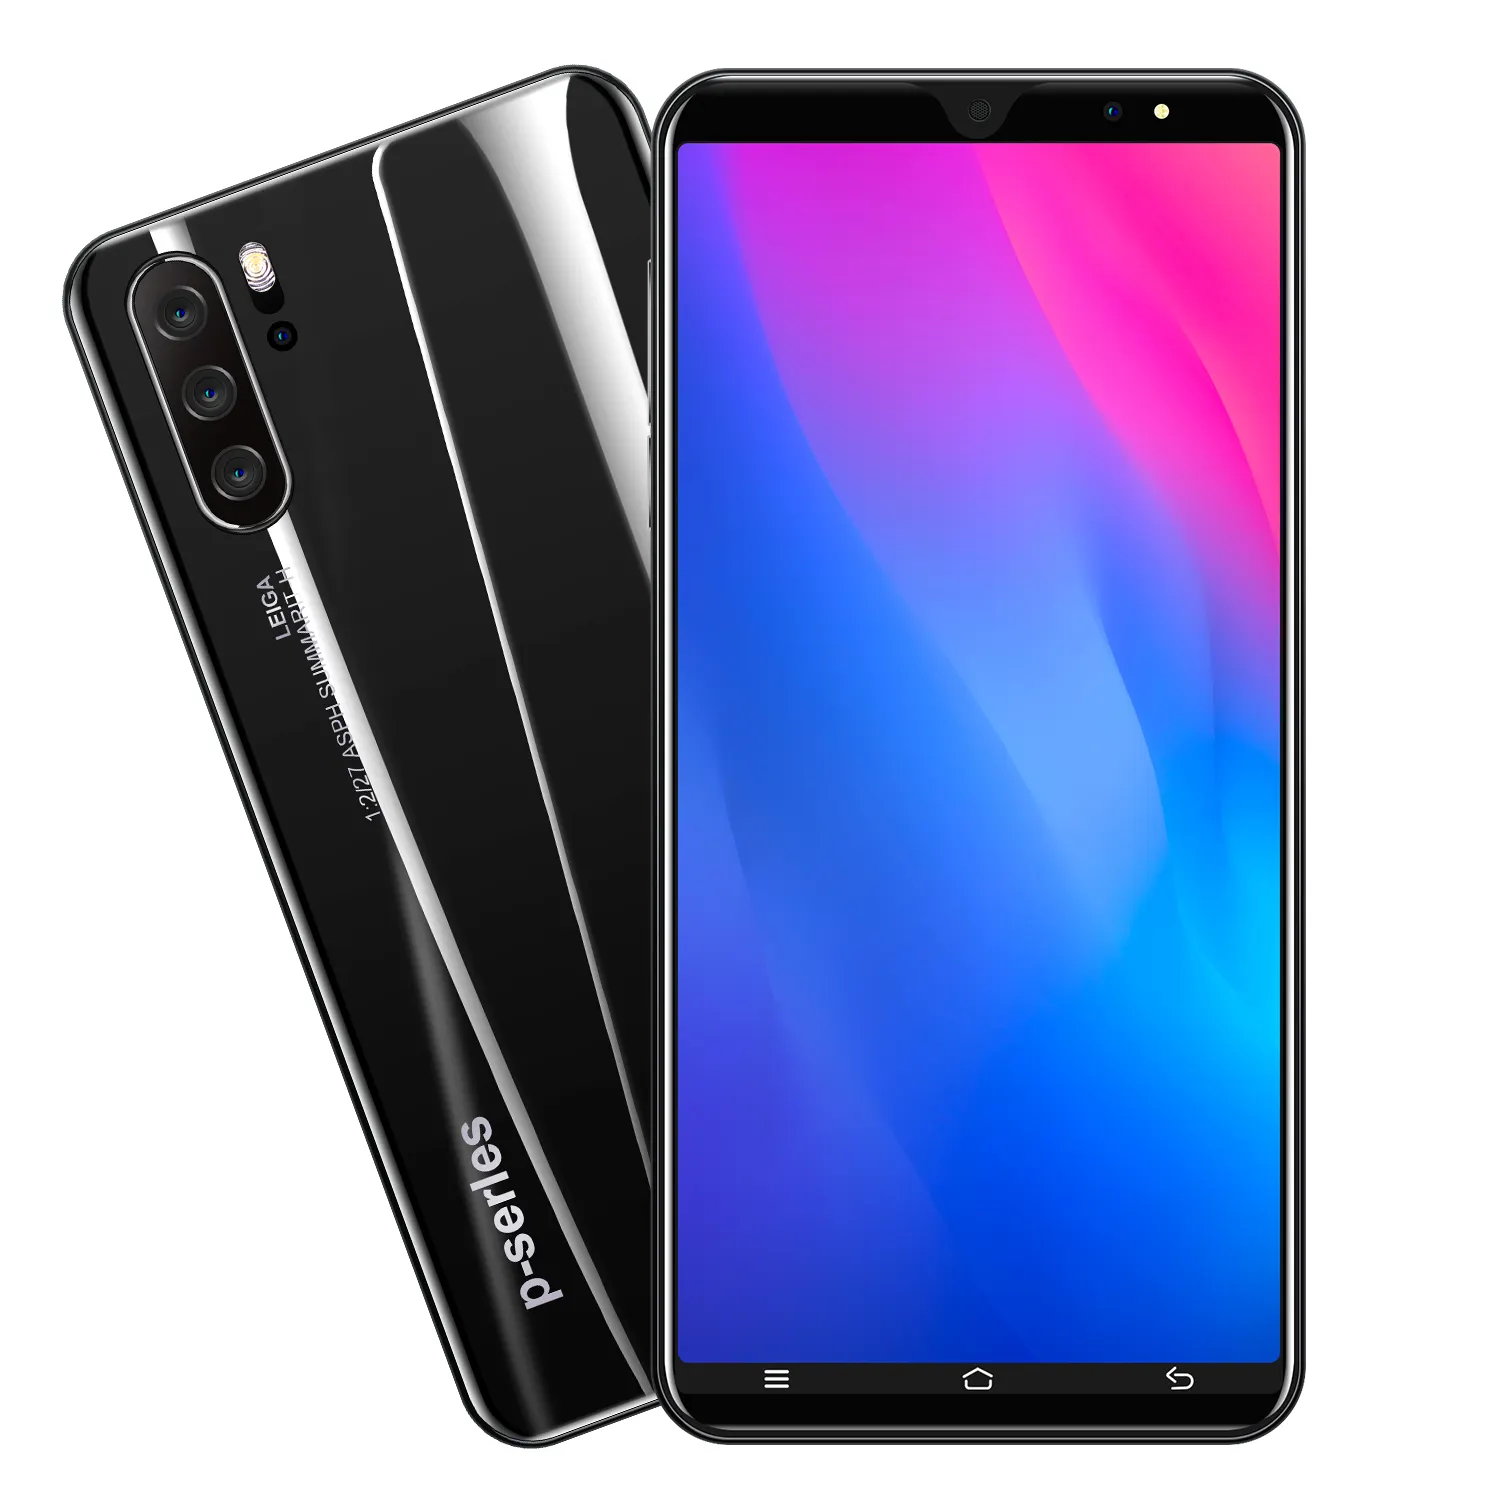 Commercio all'ingrosso P33 Android del telefono mobile 5.8 inch Della presa di Fabbrica Può essere OEM Cina smartphone hanno un basso prezzo